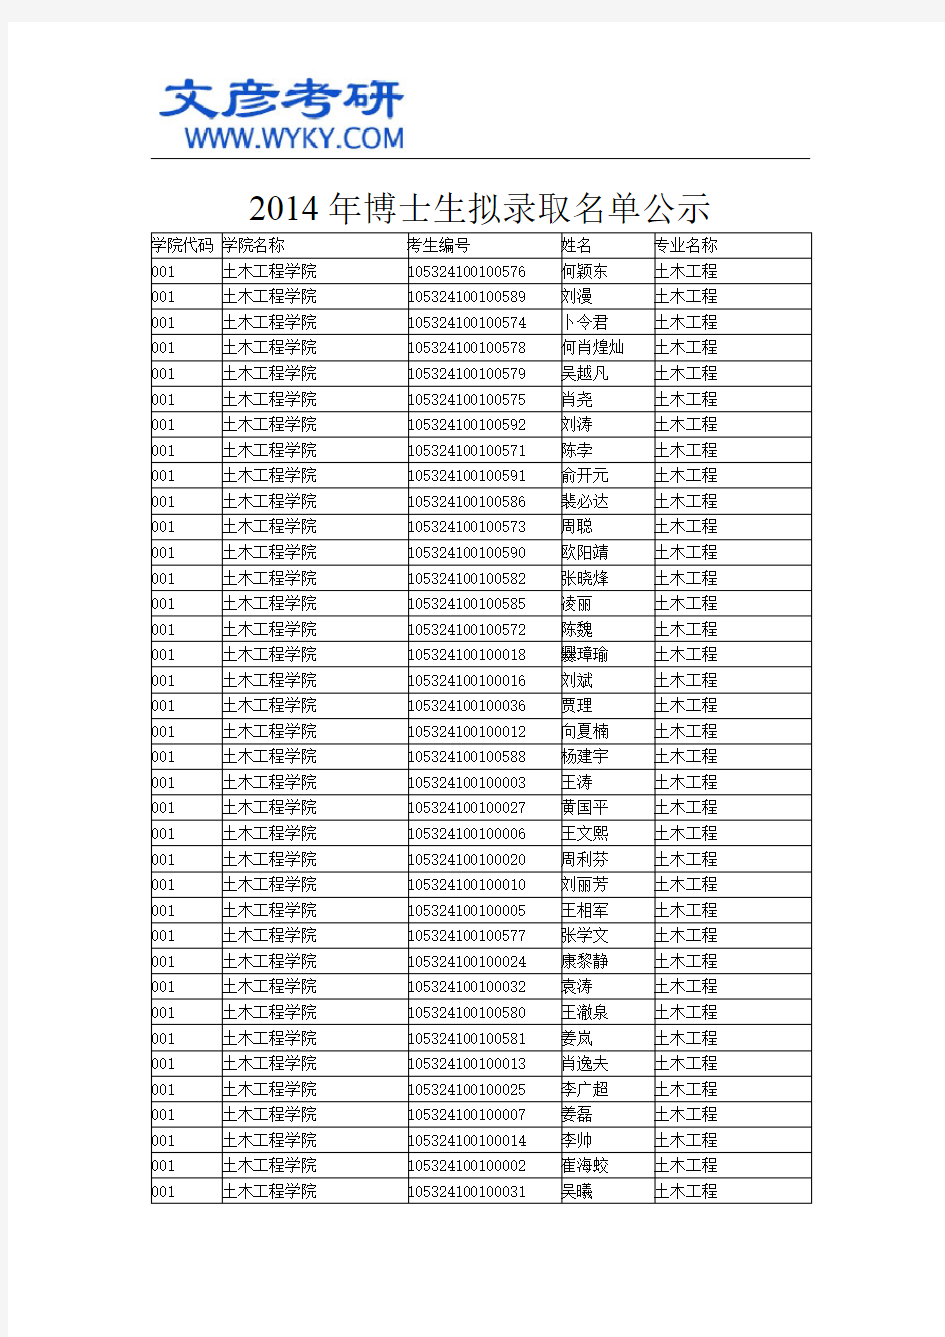 2014年博士生拟录取名单公示 _湖南大学研究生院